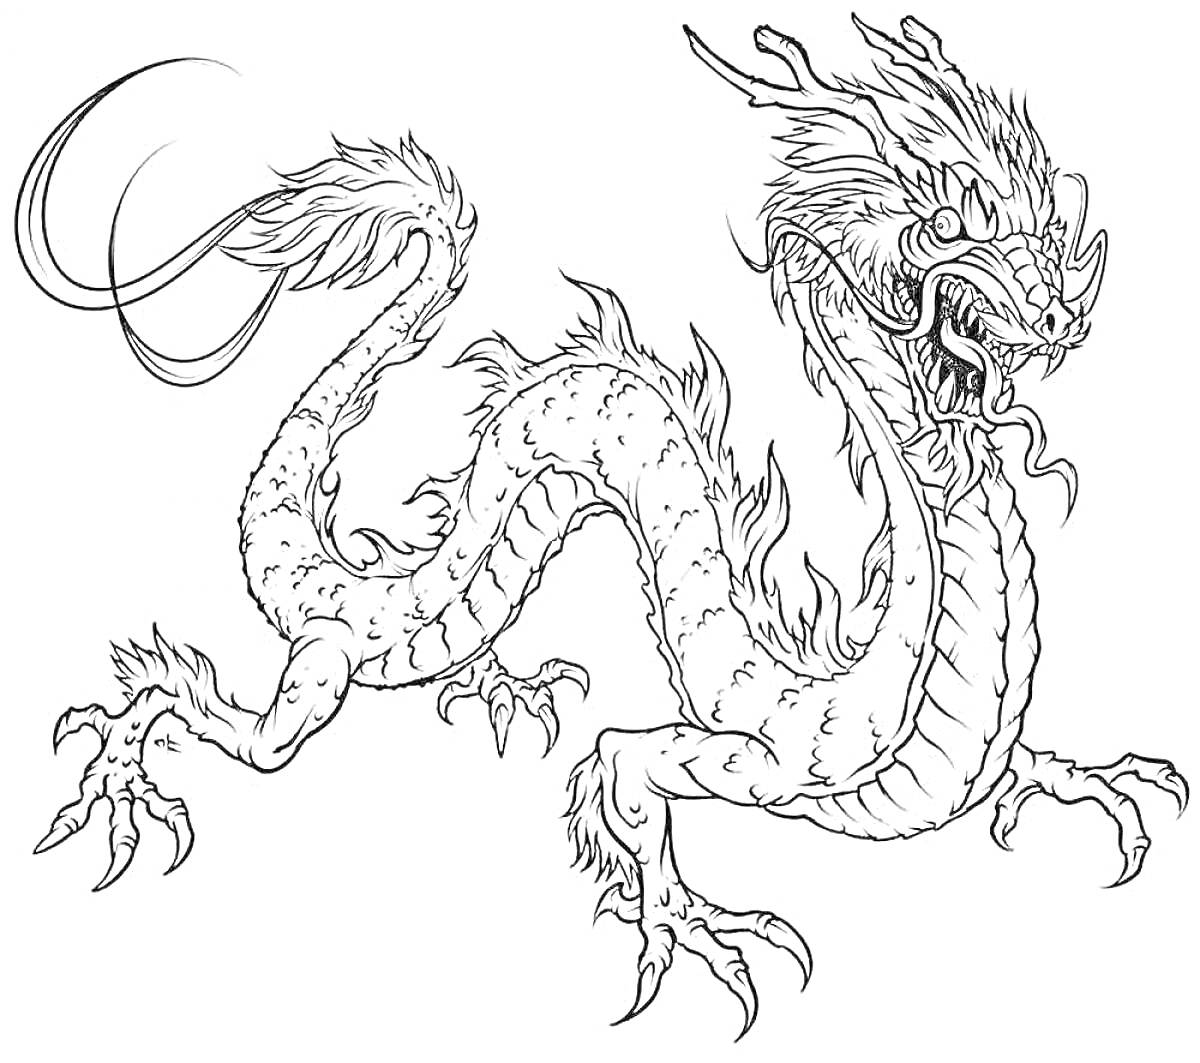 Раскраска Дракон с длинным извивающимся телом, хвостом и мощными когтями, пышная грива на голове